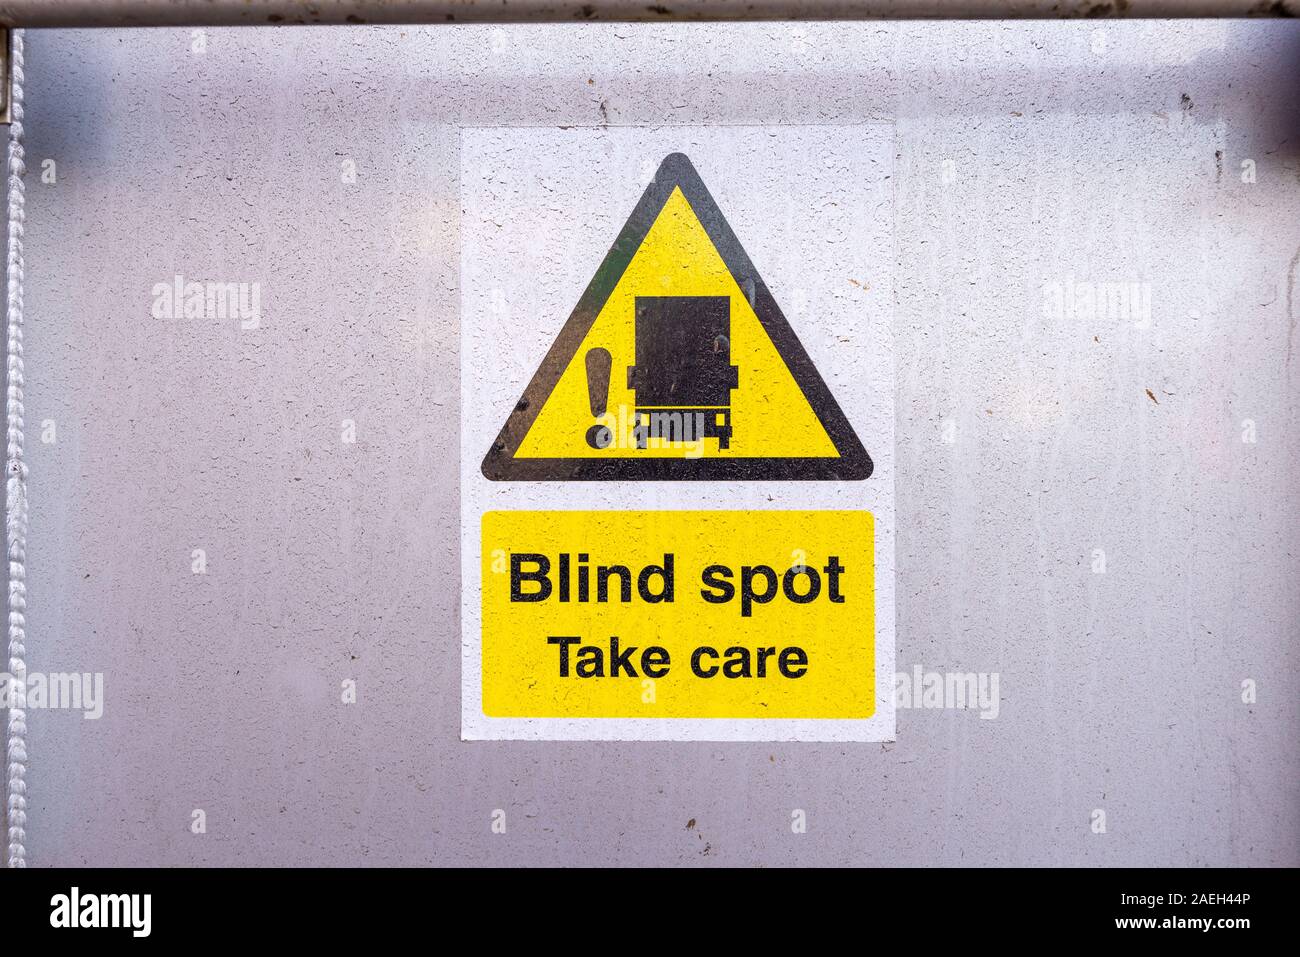 Segnale di avvertimento sul retro di un autocarro pesante dicendo Blind spot, prendersi cura Foto Stock